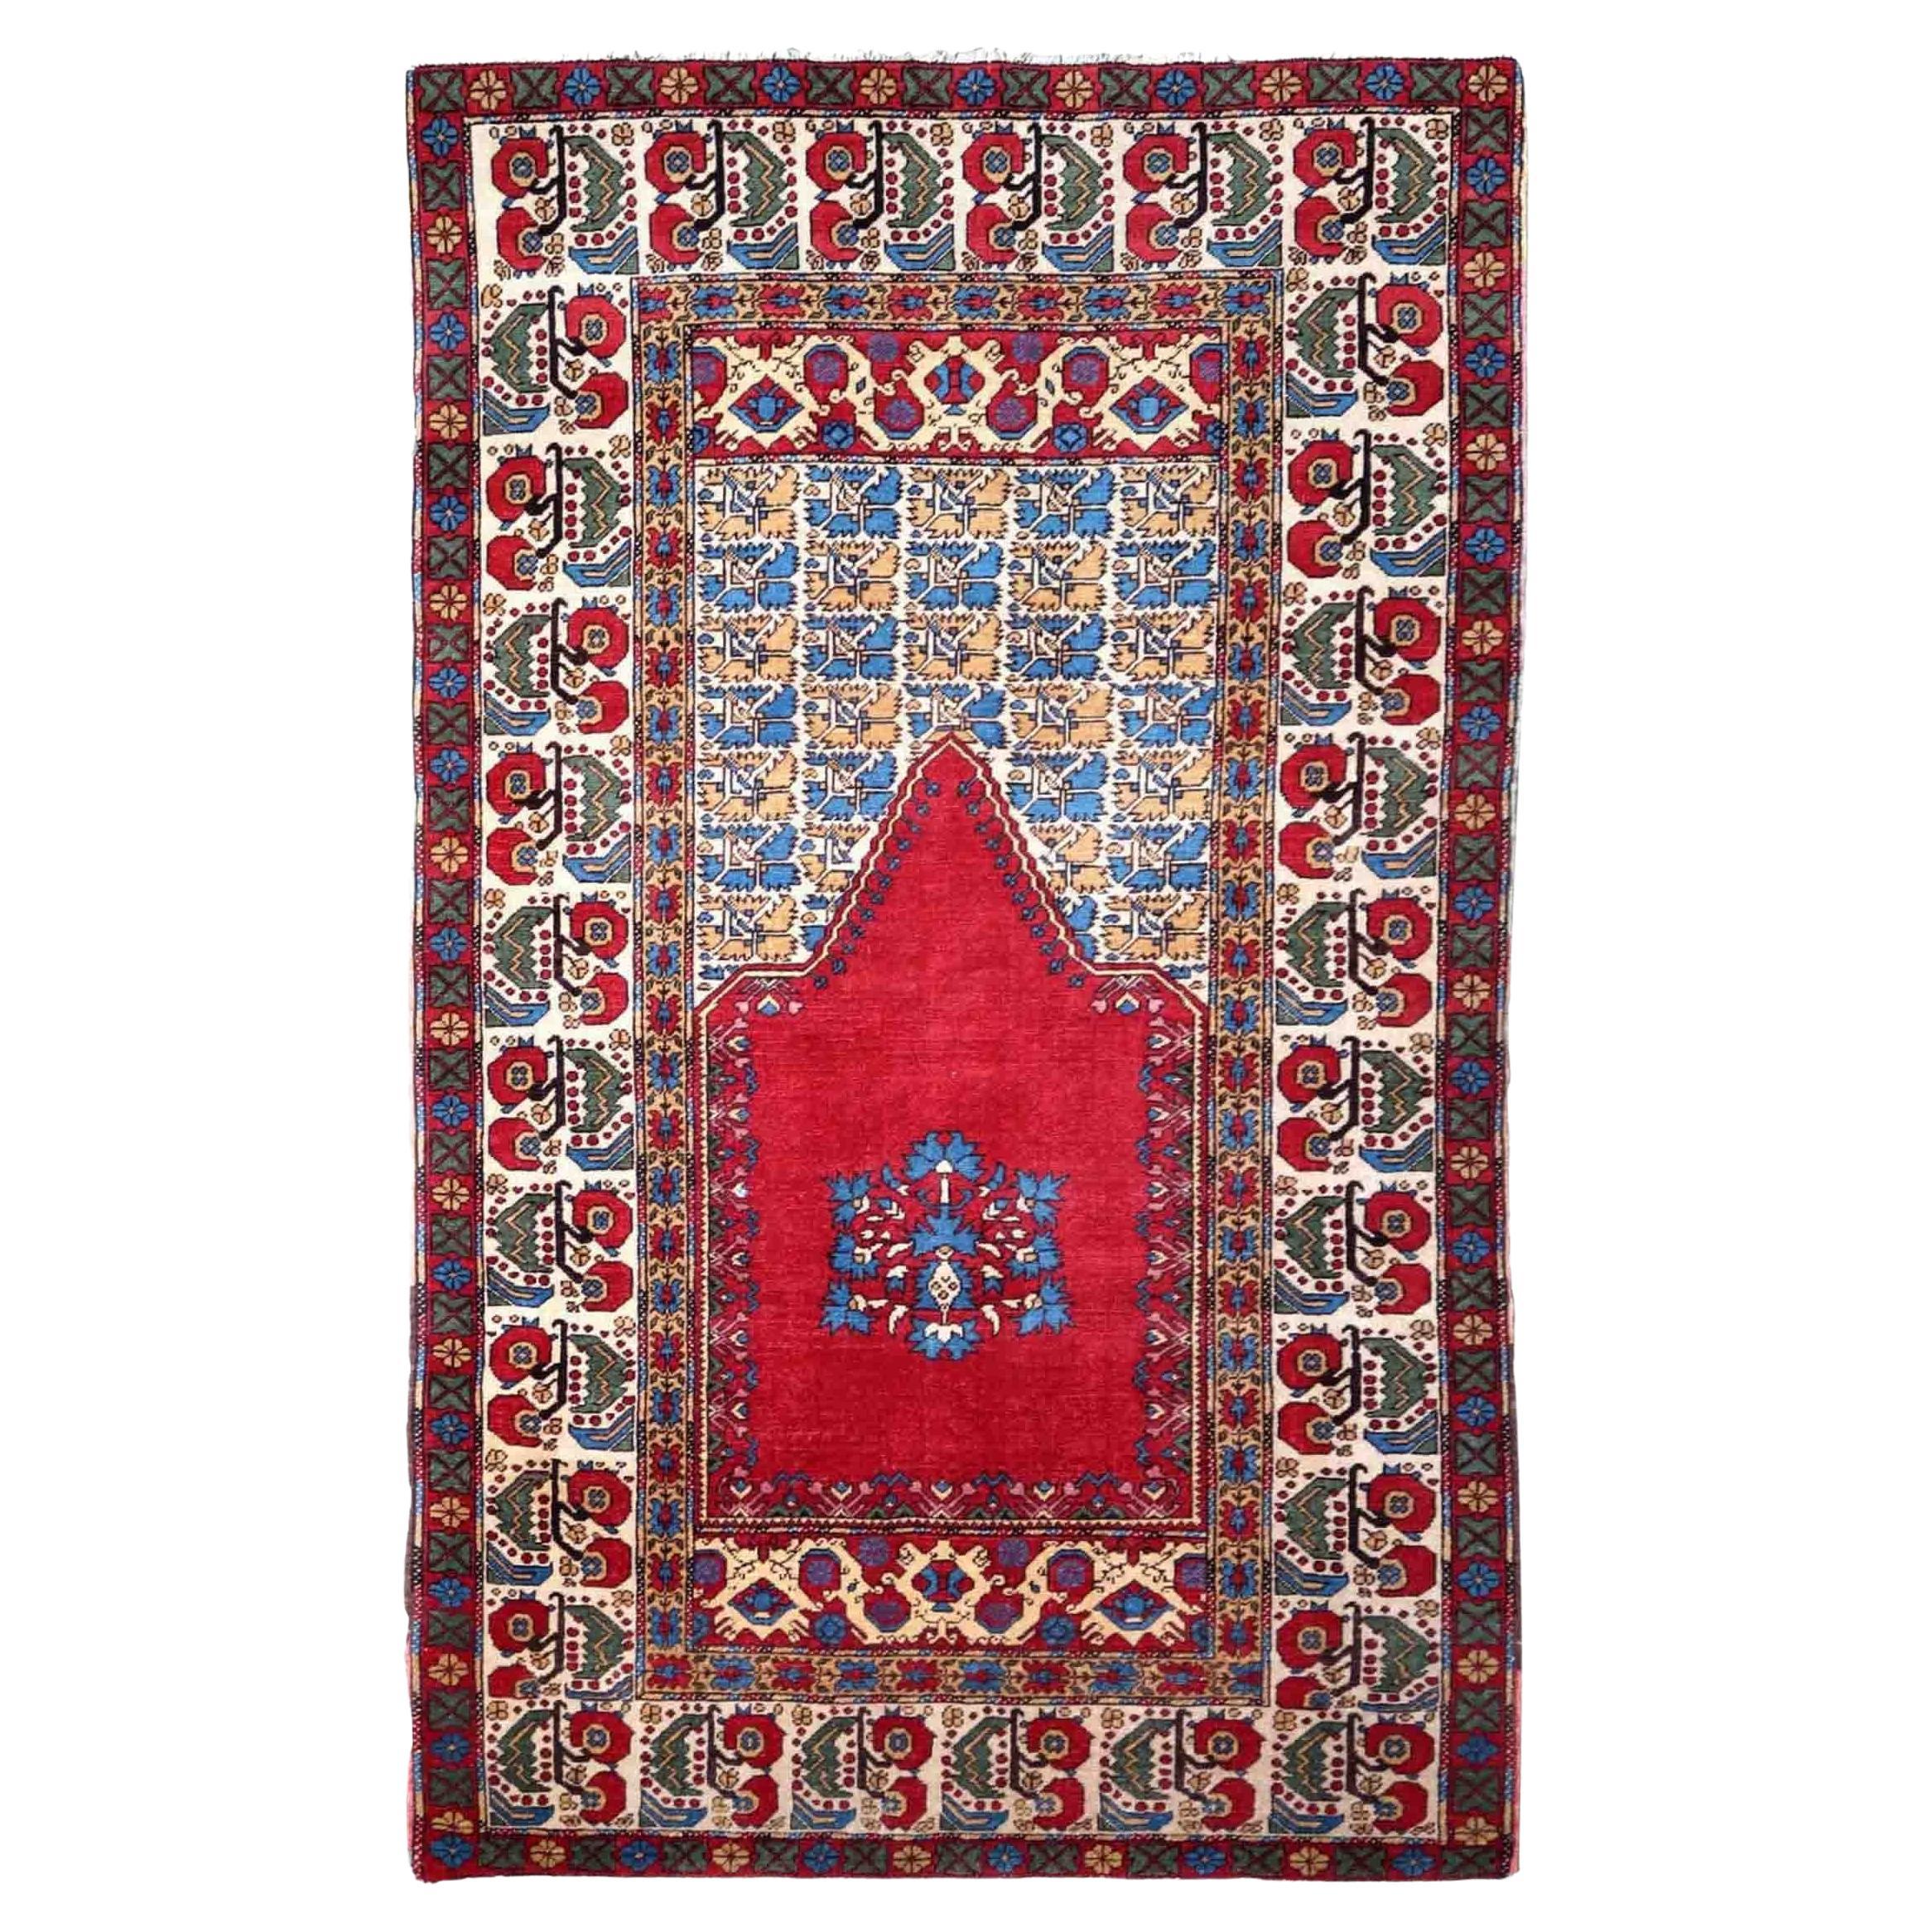 Handgefertigter antiker türkischer Transylvania-Teppich im Sammlerstil, 1880er Jahre, 1P129